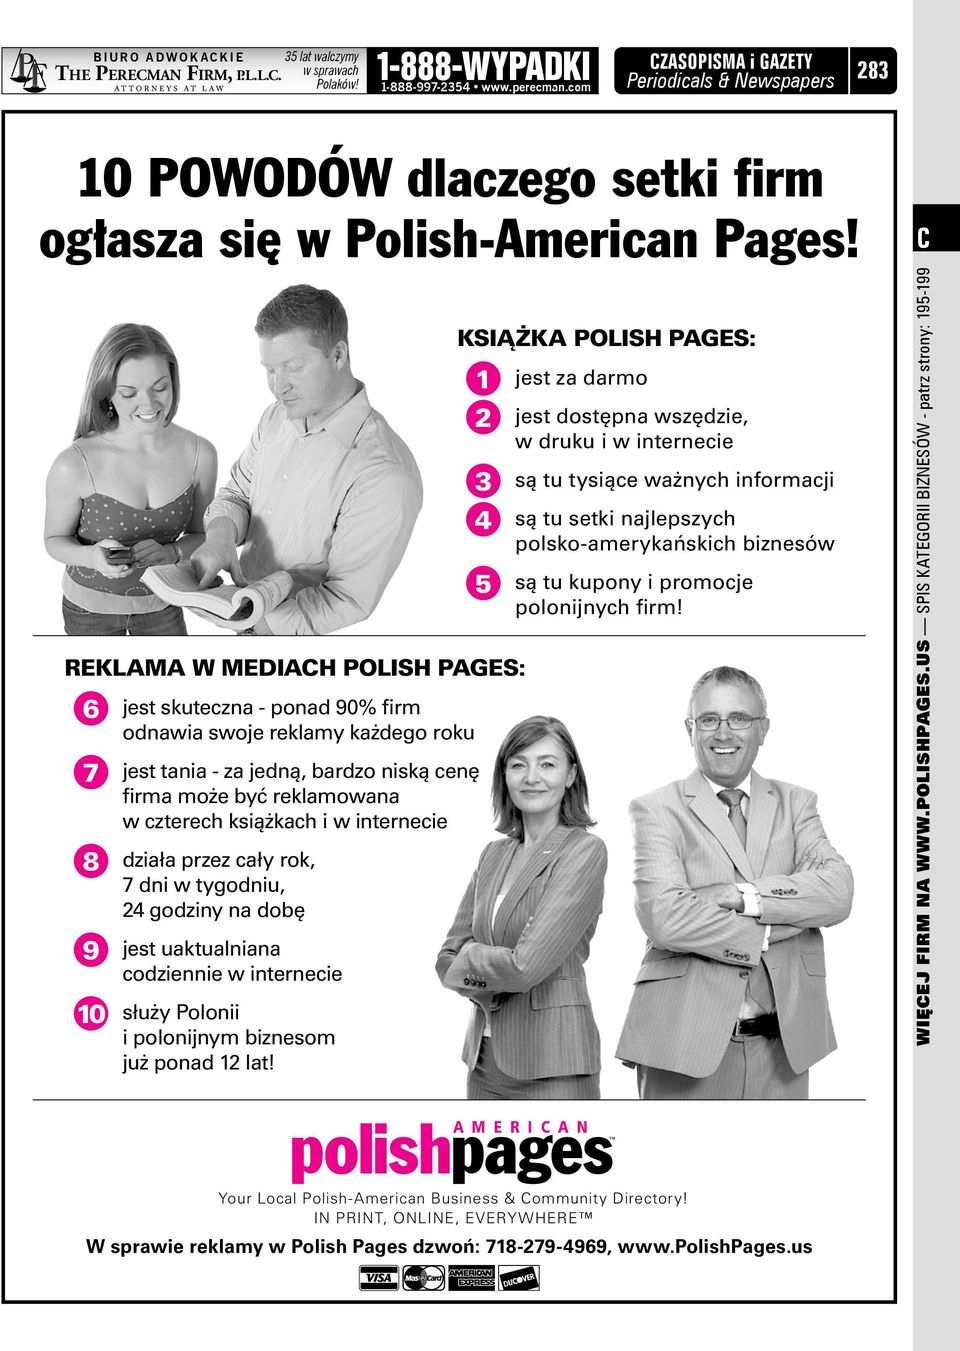 Reklama w MEDIACH Polish pages: 6 7 8 9 10 jest skuteczna - ponad 90% firm odnawia swoje reklamy każdego roku jest tania - za jedną, bardzo niską cenę firma może być reklamowana w czterech książkach